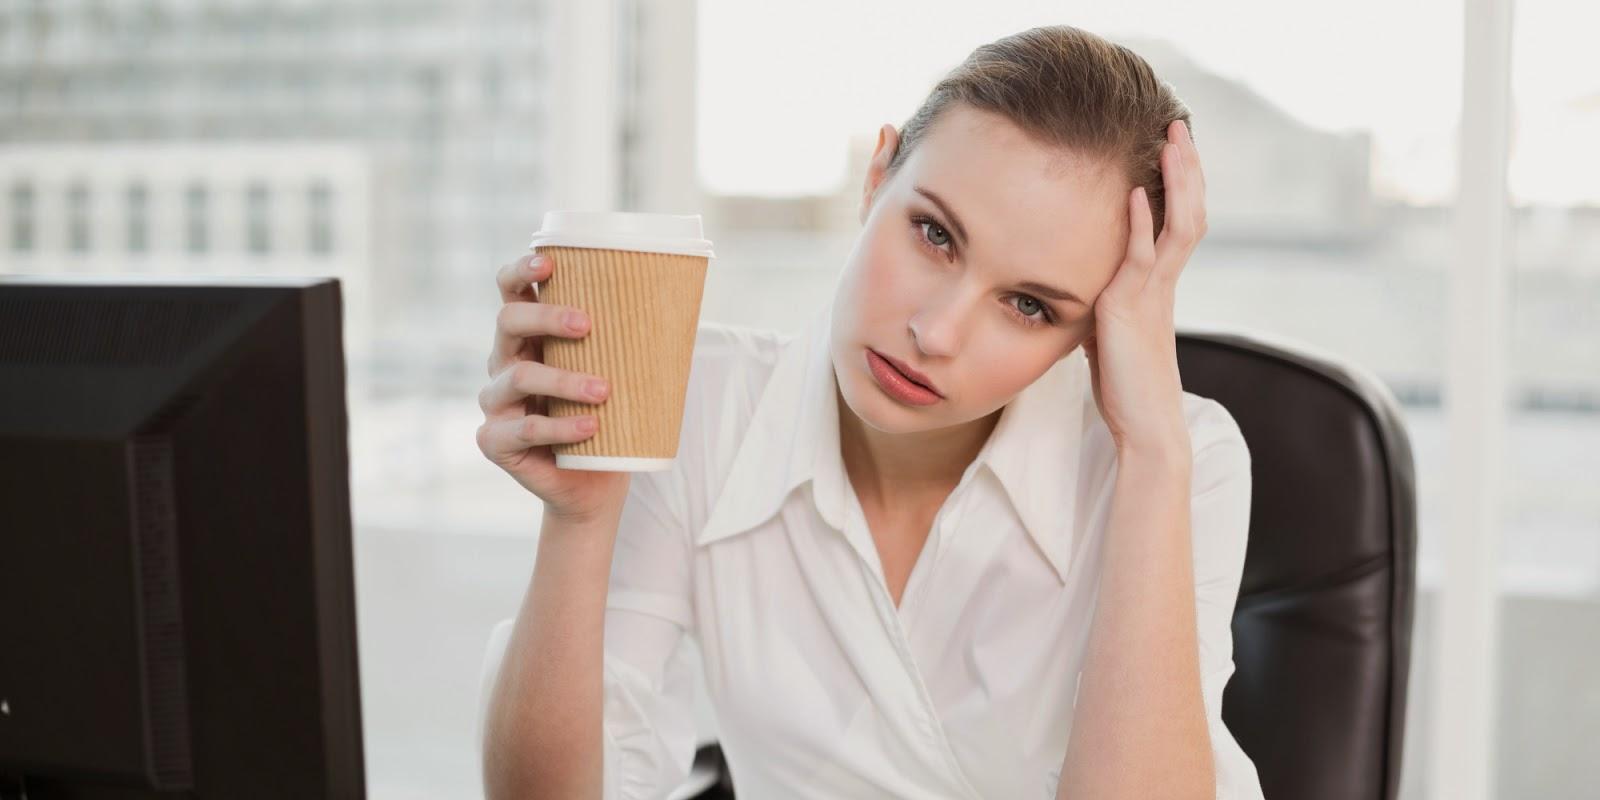 Избегать кофе при мигрени необязательно. Главное – знать меру